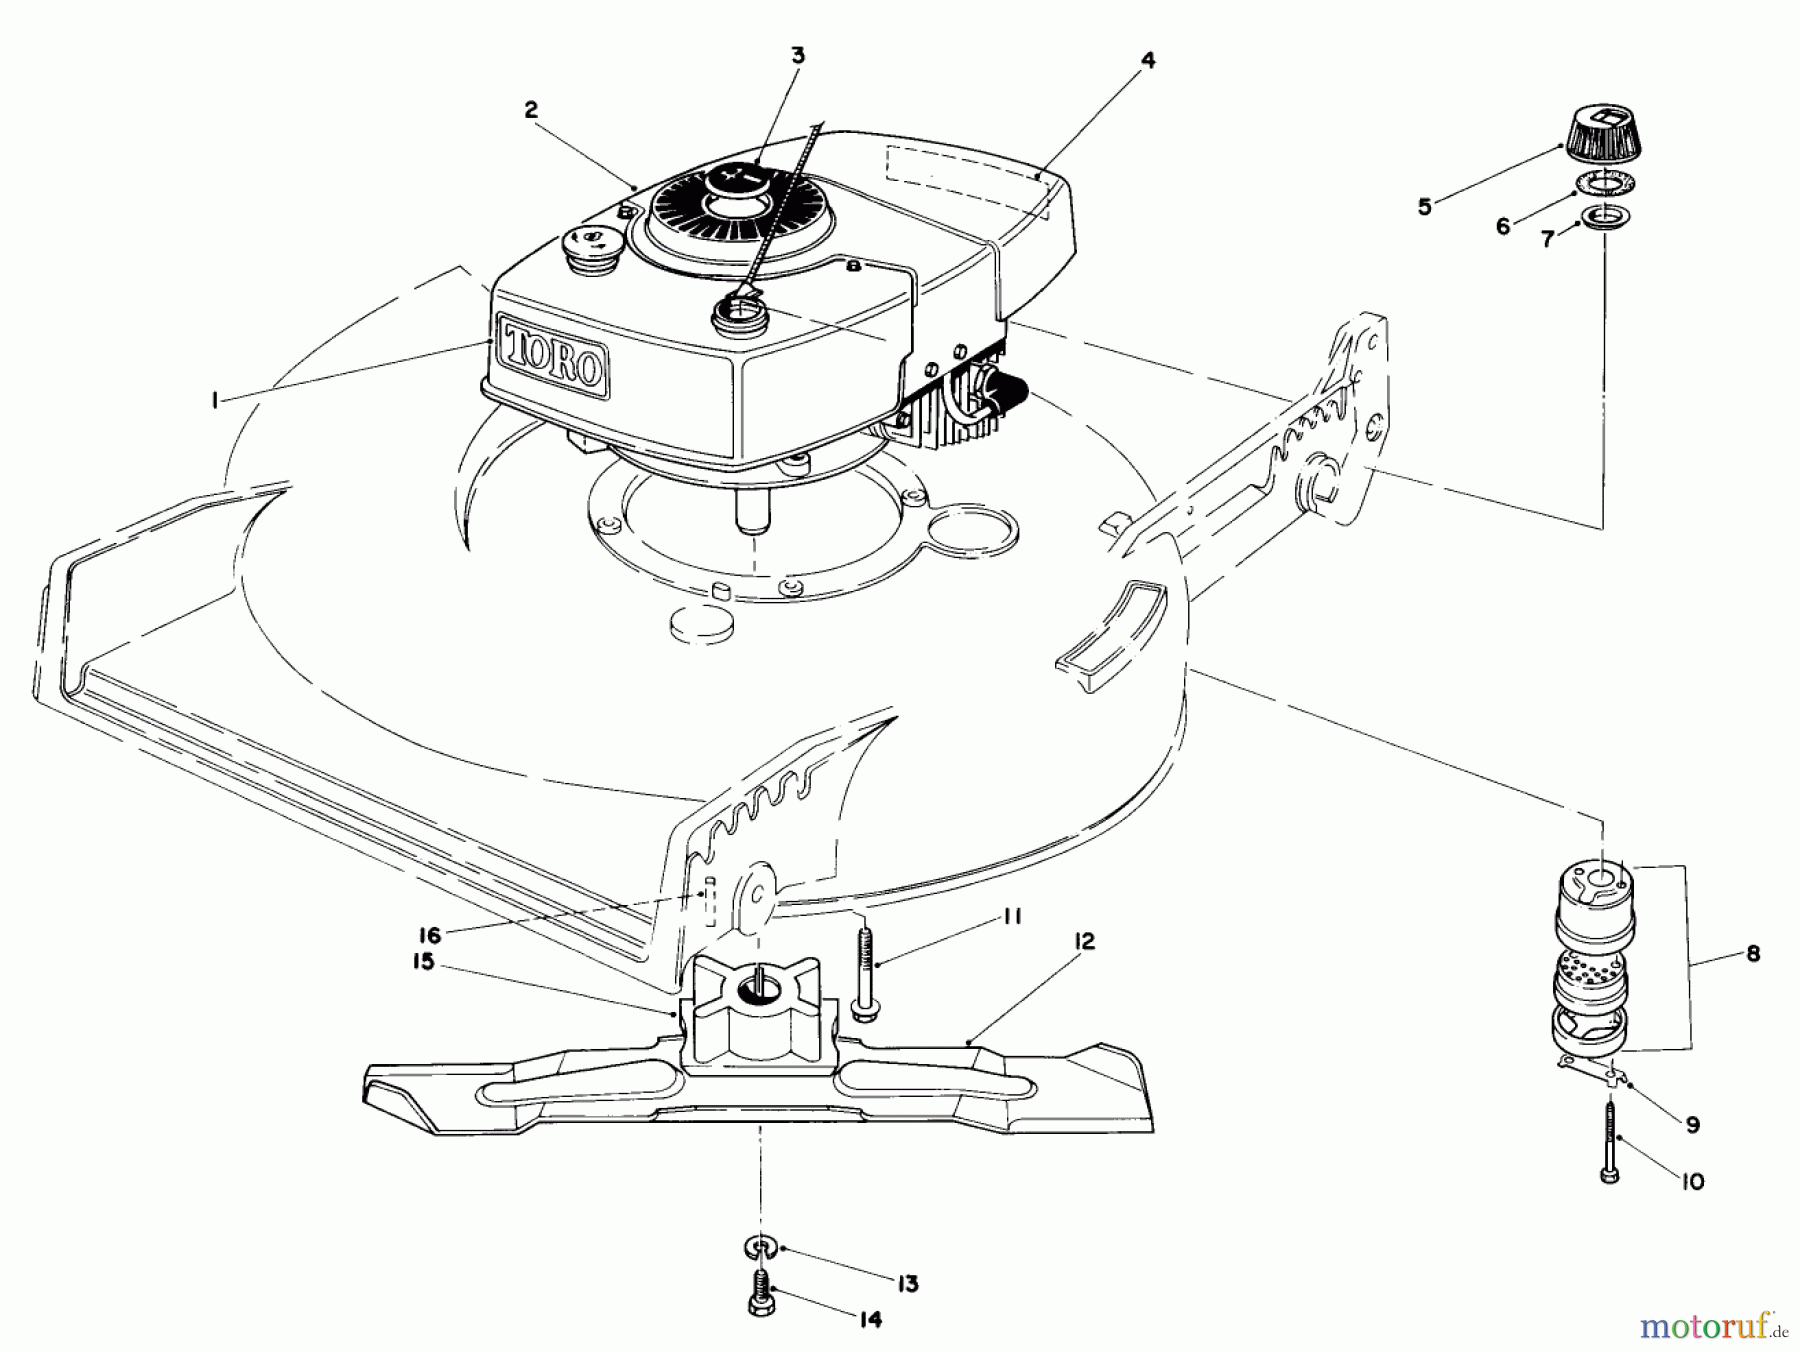  Toro Neu Mowers, Walk-Behind Seite 1 20570 - Toro Lawnmower, 1985 (5000001-5999999) ENGINE ASSEMBLY